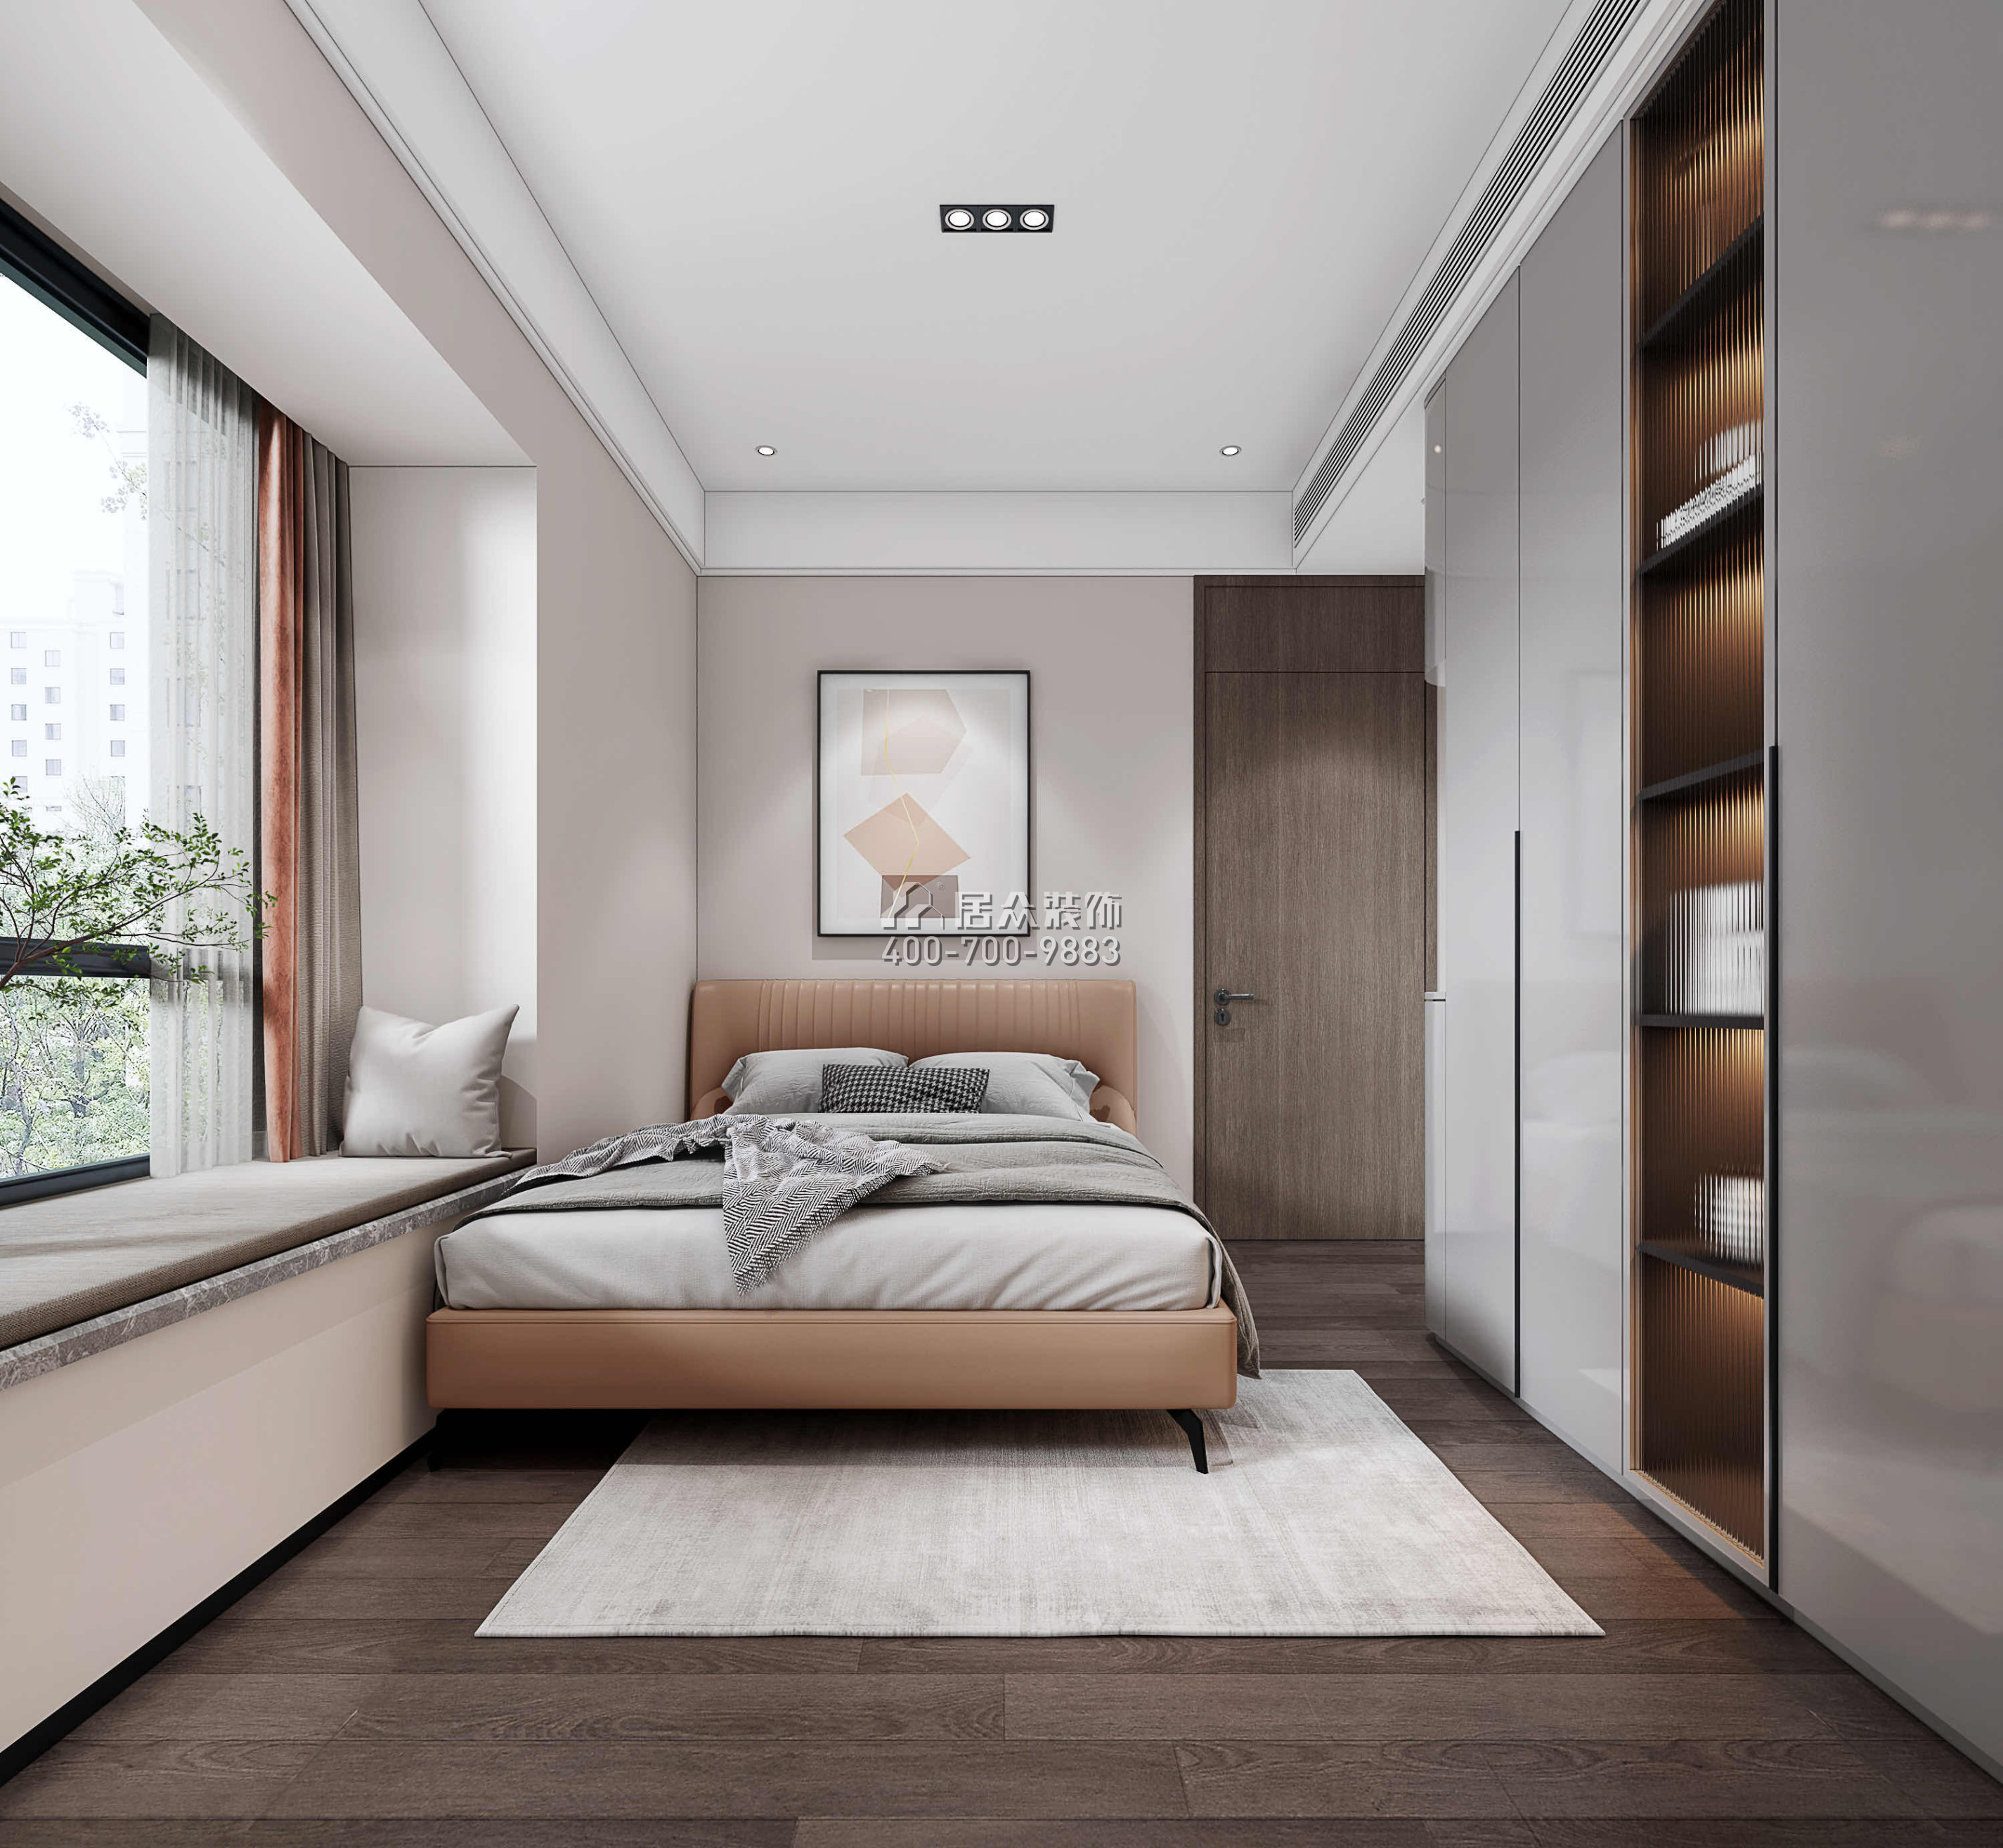 南海玫瑰园三期180平方米现代简约风格平层户型卧室装修效果图